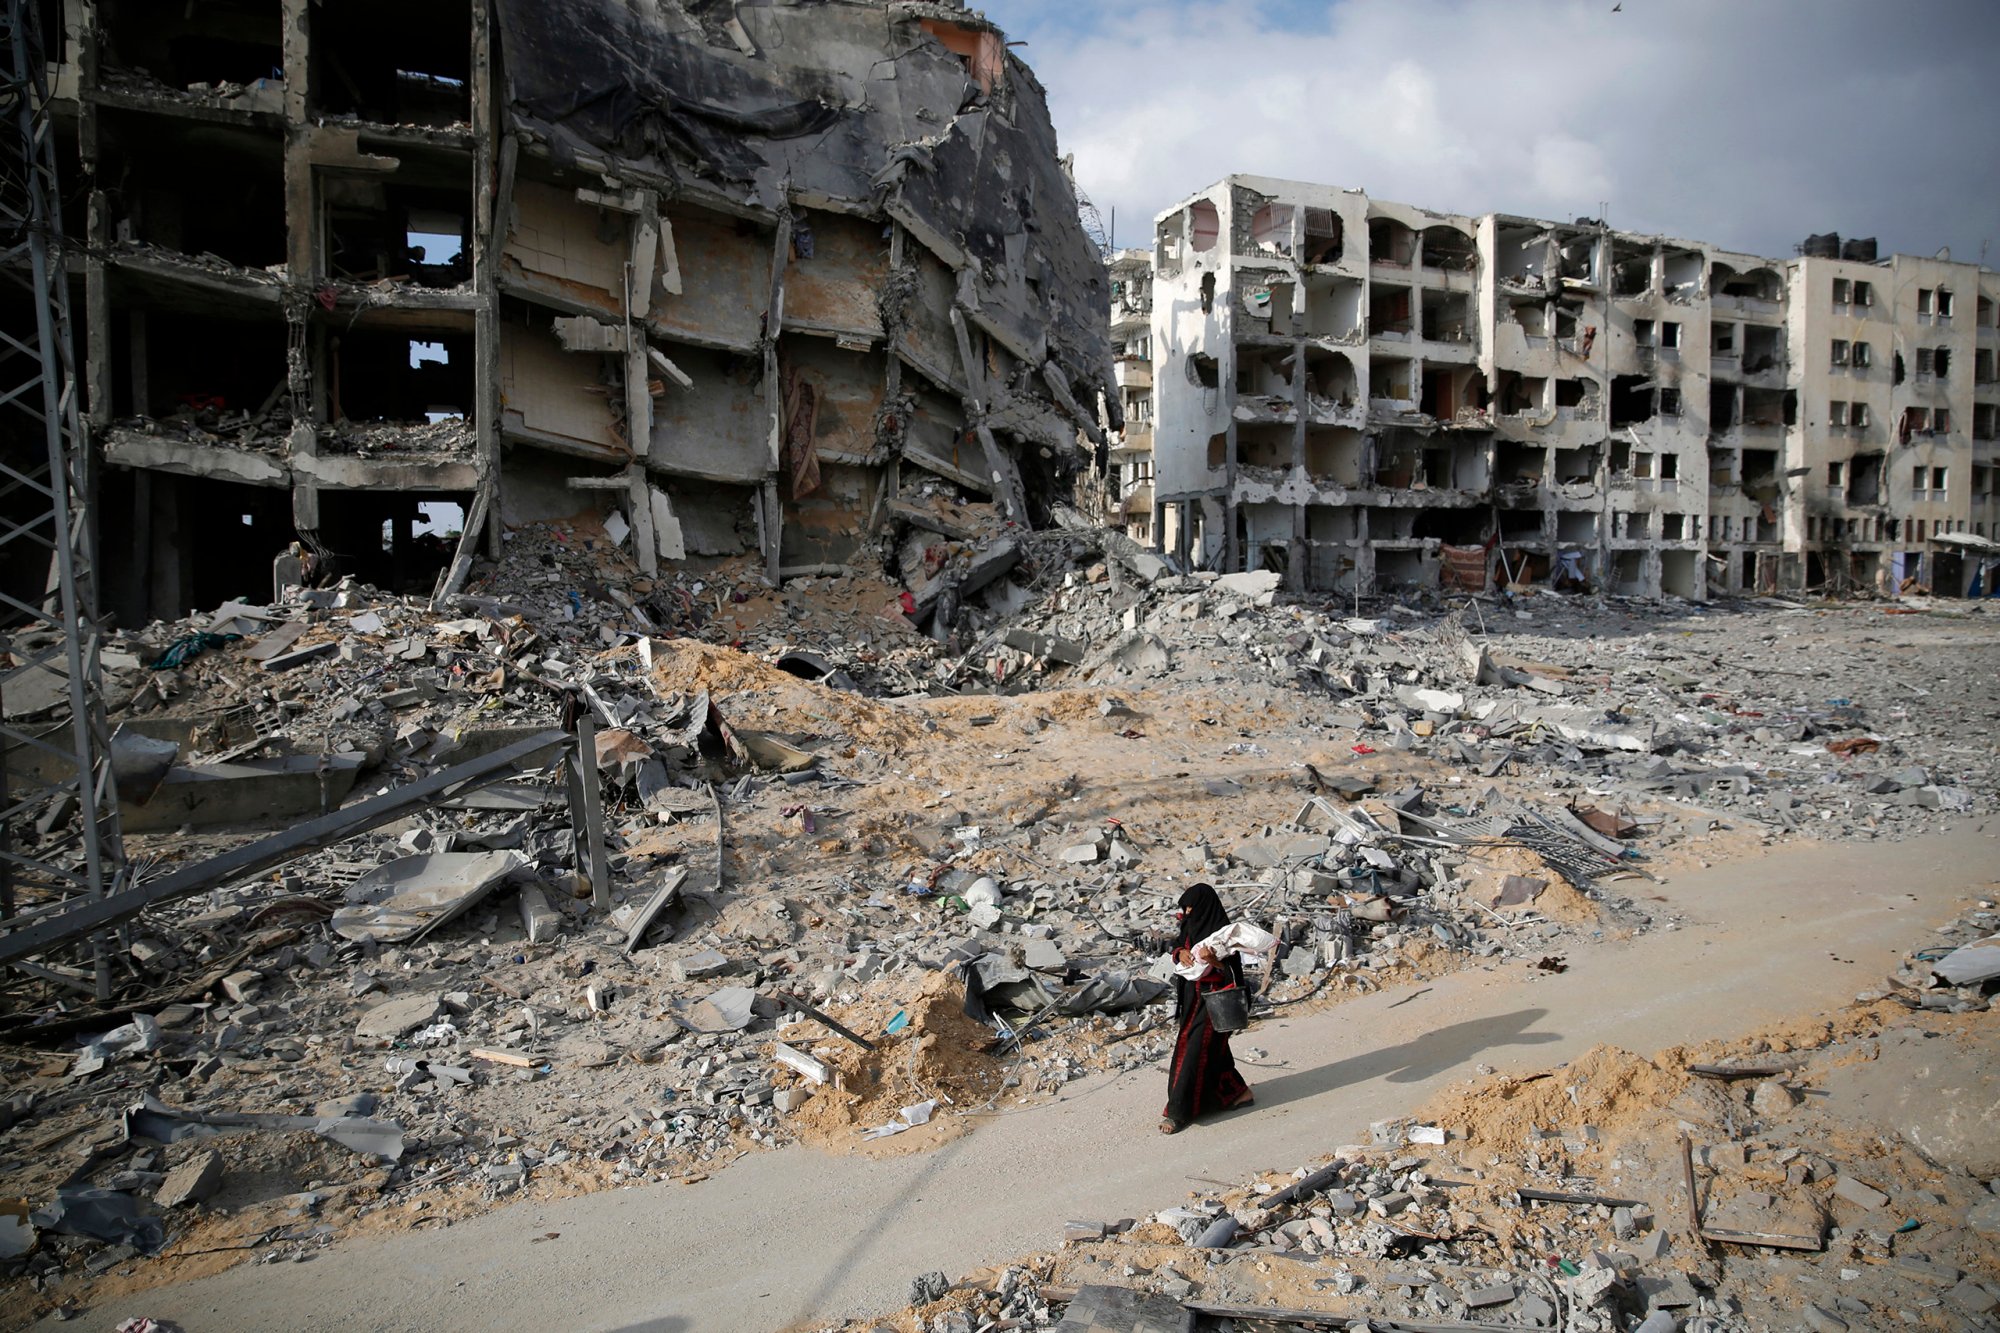 Συνεχίζεται ο βομβαρδισμός της Γάζας από την Ισραηλινή αεροπορία – Στους 11 μέχρι στιγμής οι νεκροί Παλαιστίνιοι